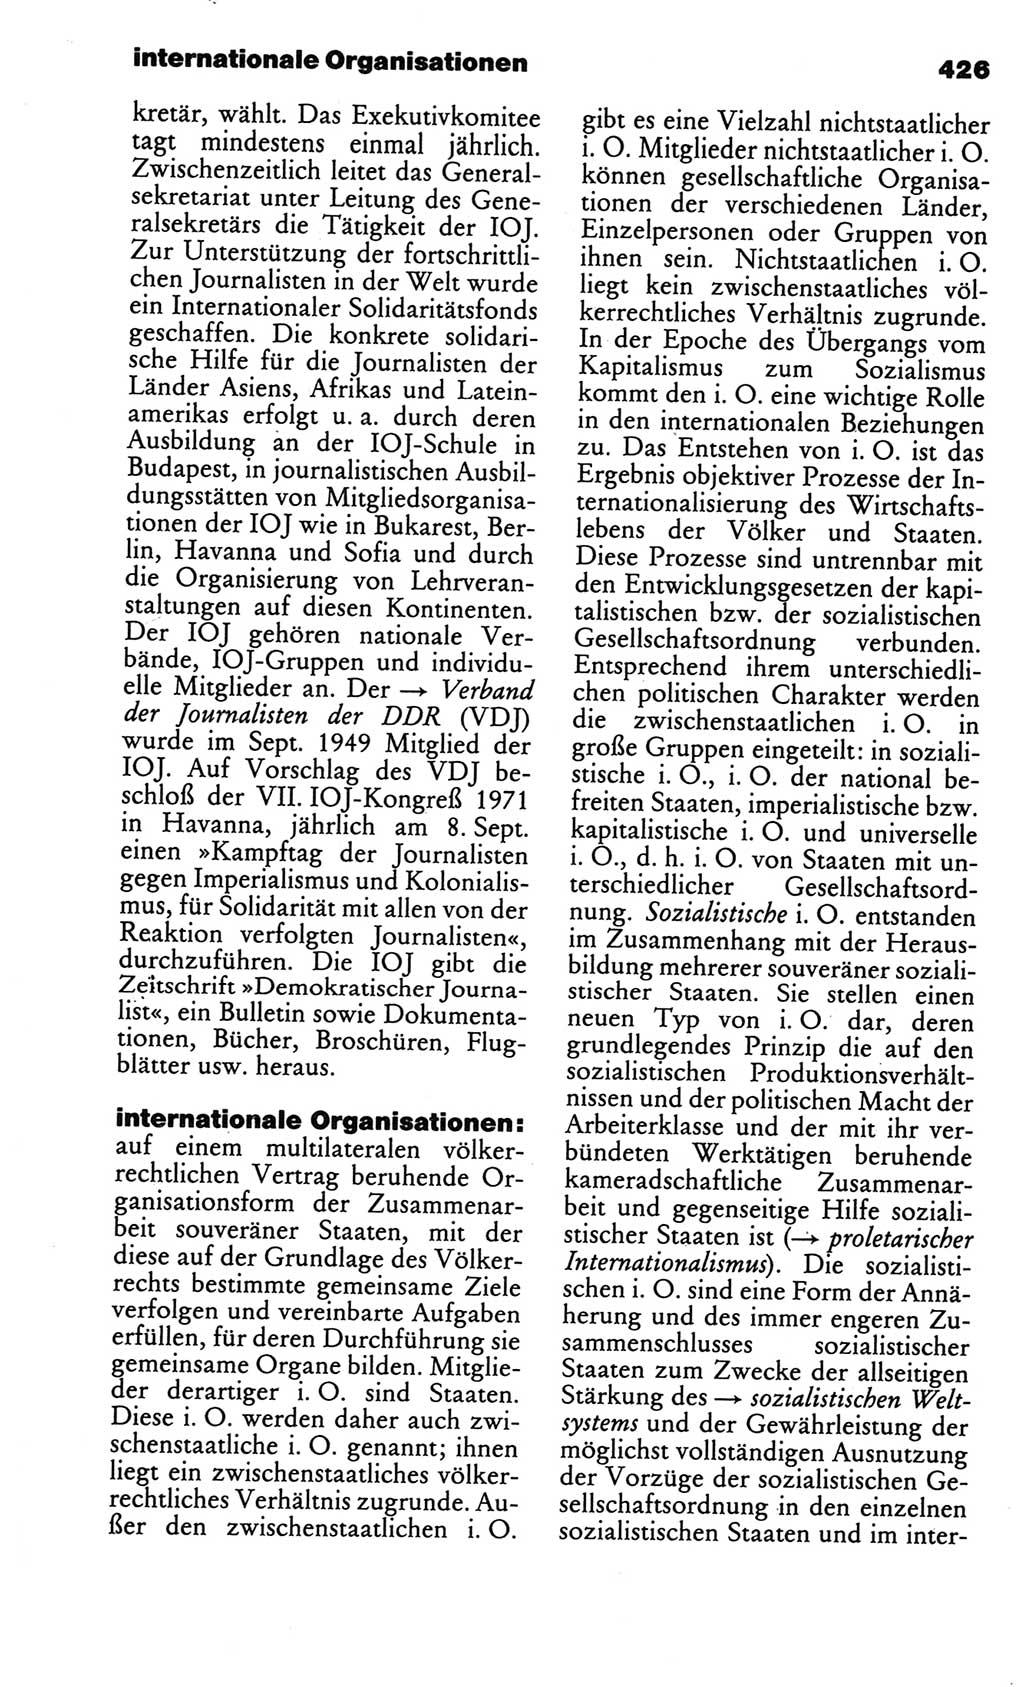 Kleines politisches Wörterbuch [Deutsche Demokratische Republik (DDR)] 1986, Seite 426 (Kl. pol. Wb. DDR 1986, S. 426)